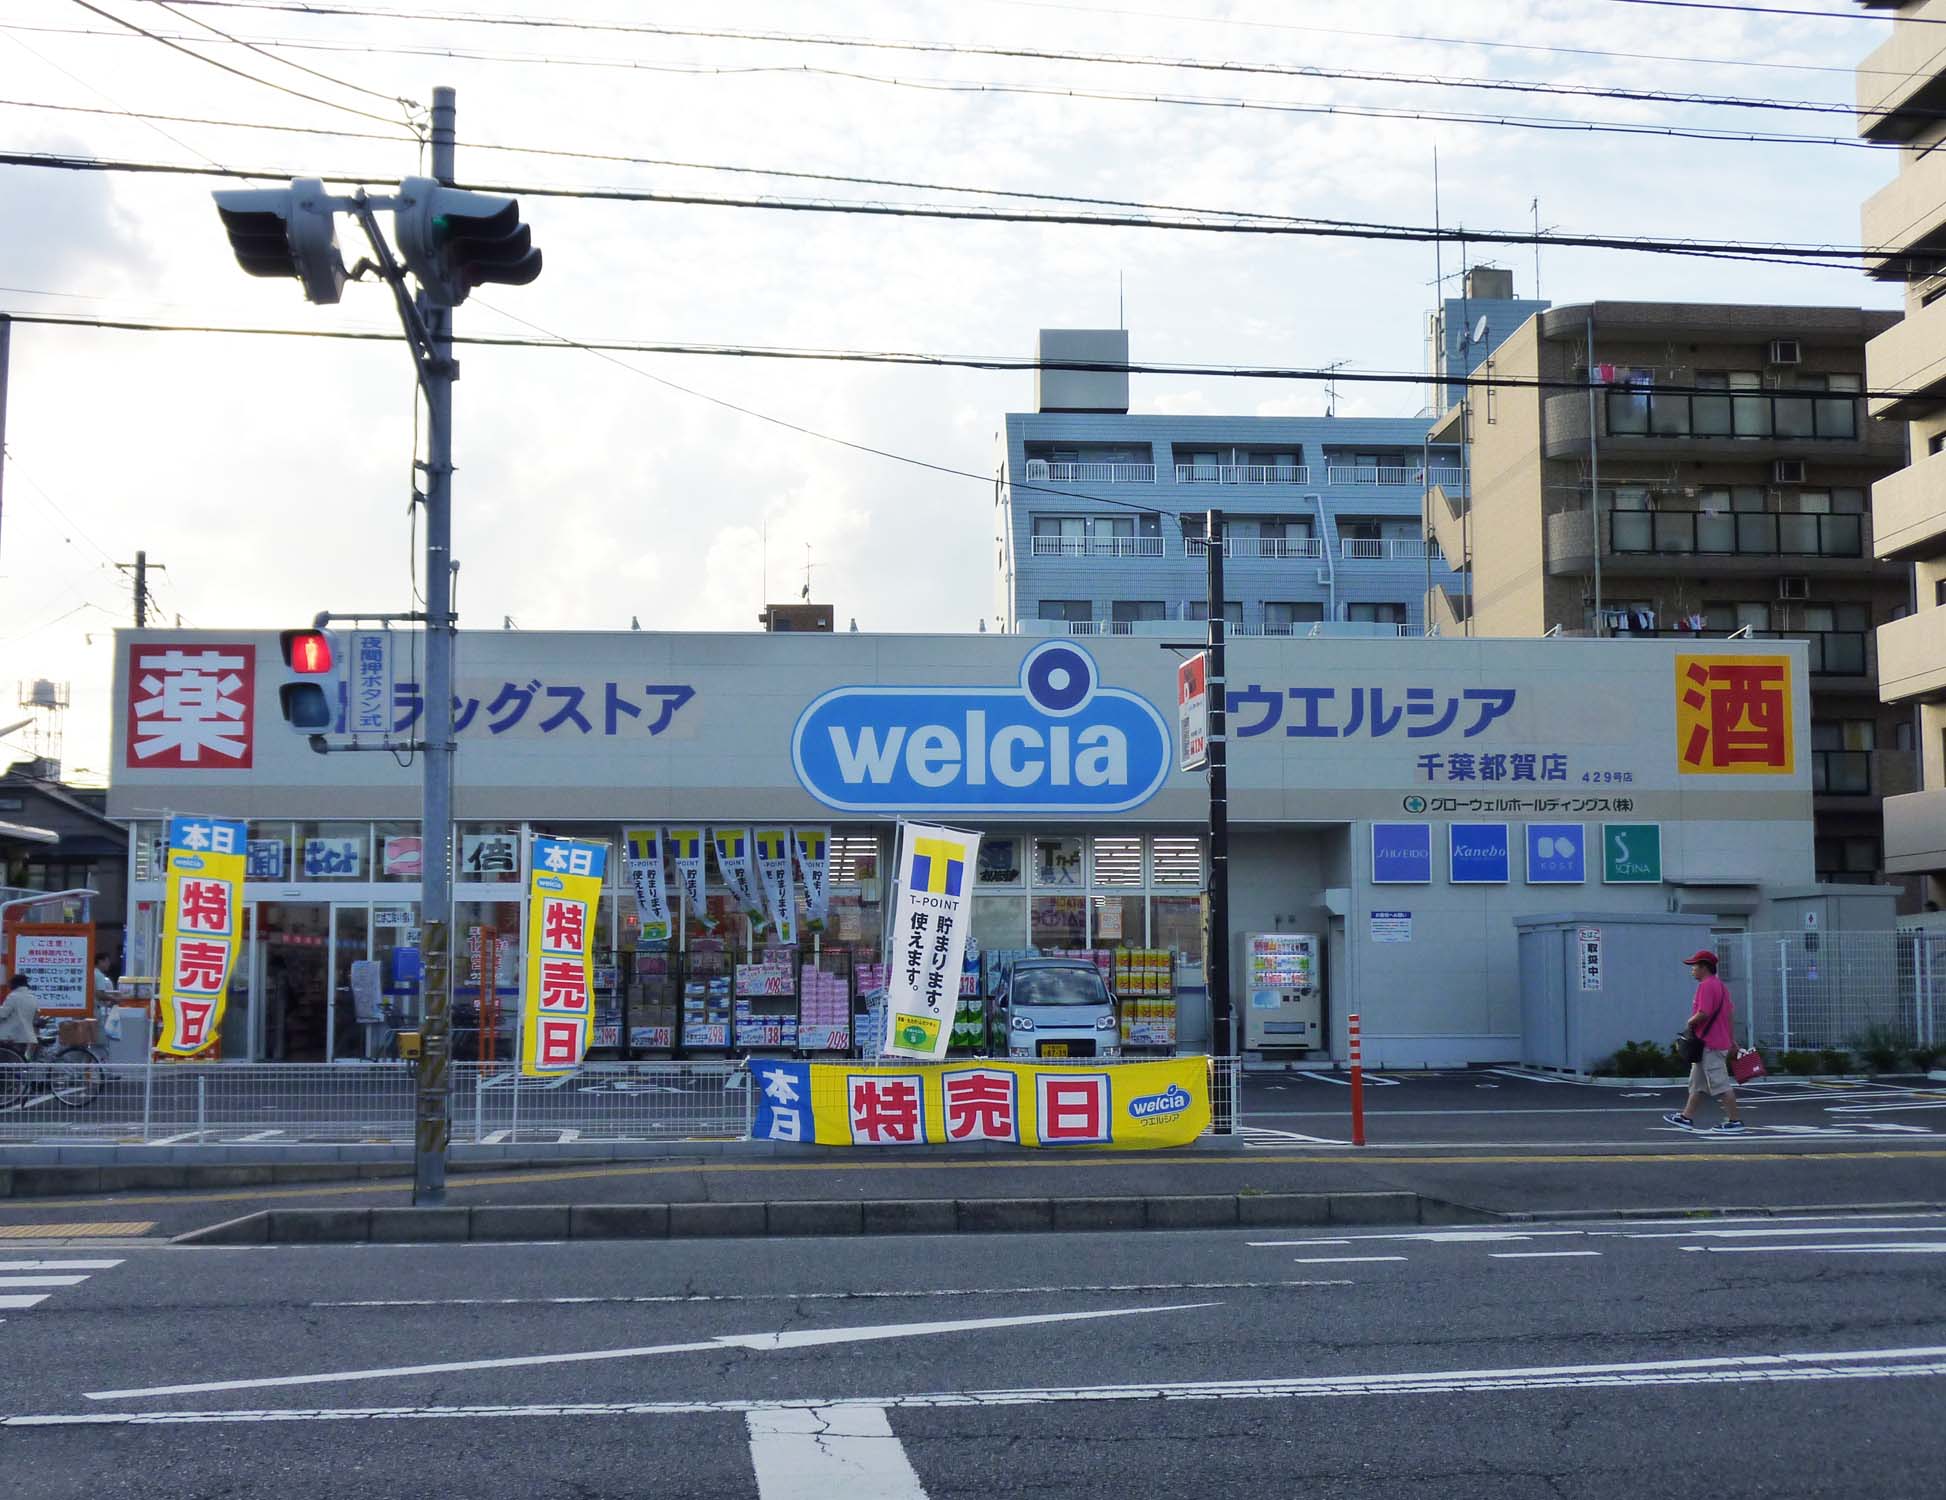 Dorakkusutoa. Uerushia Chiba Tsuga shop 848m until (drugstore)